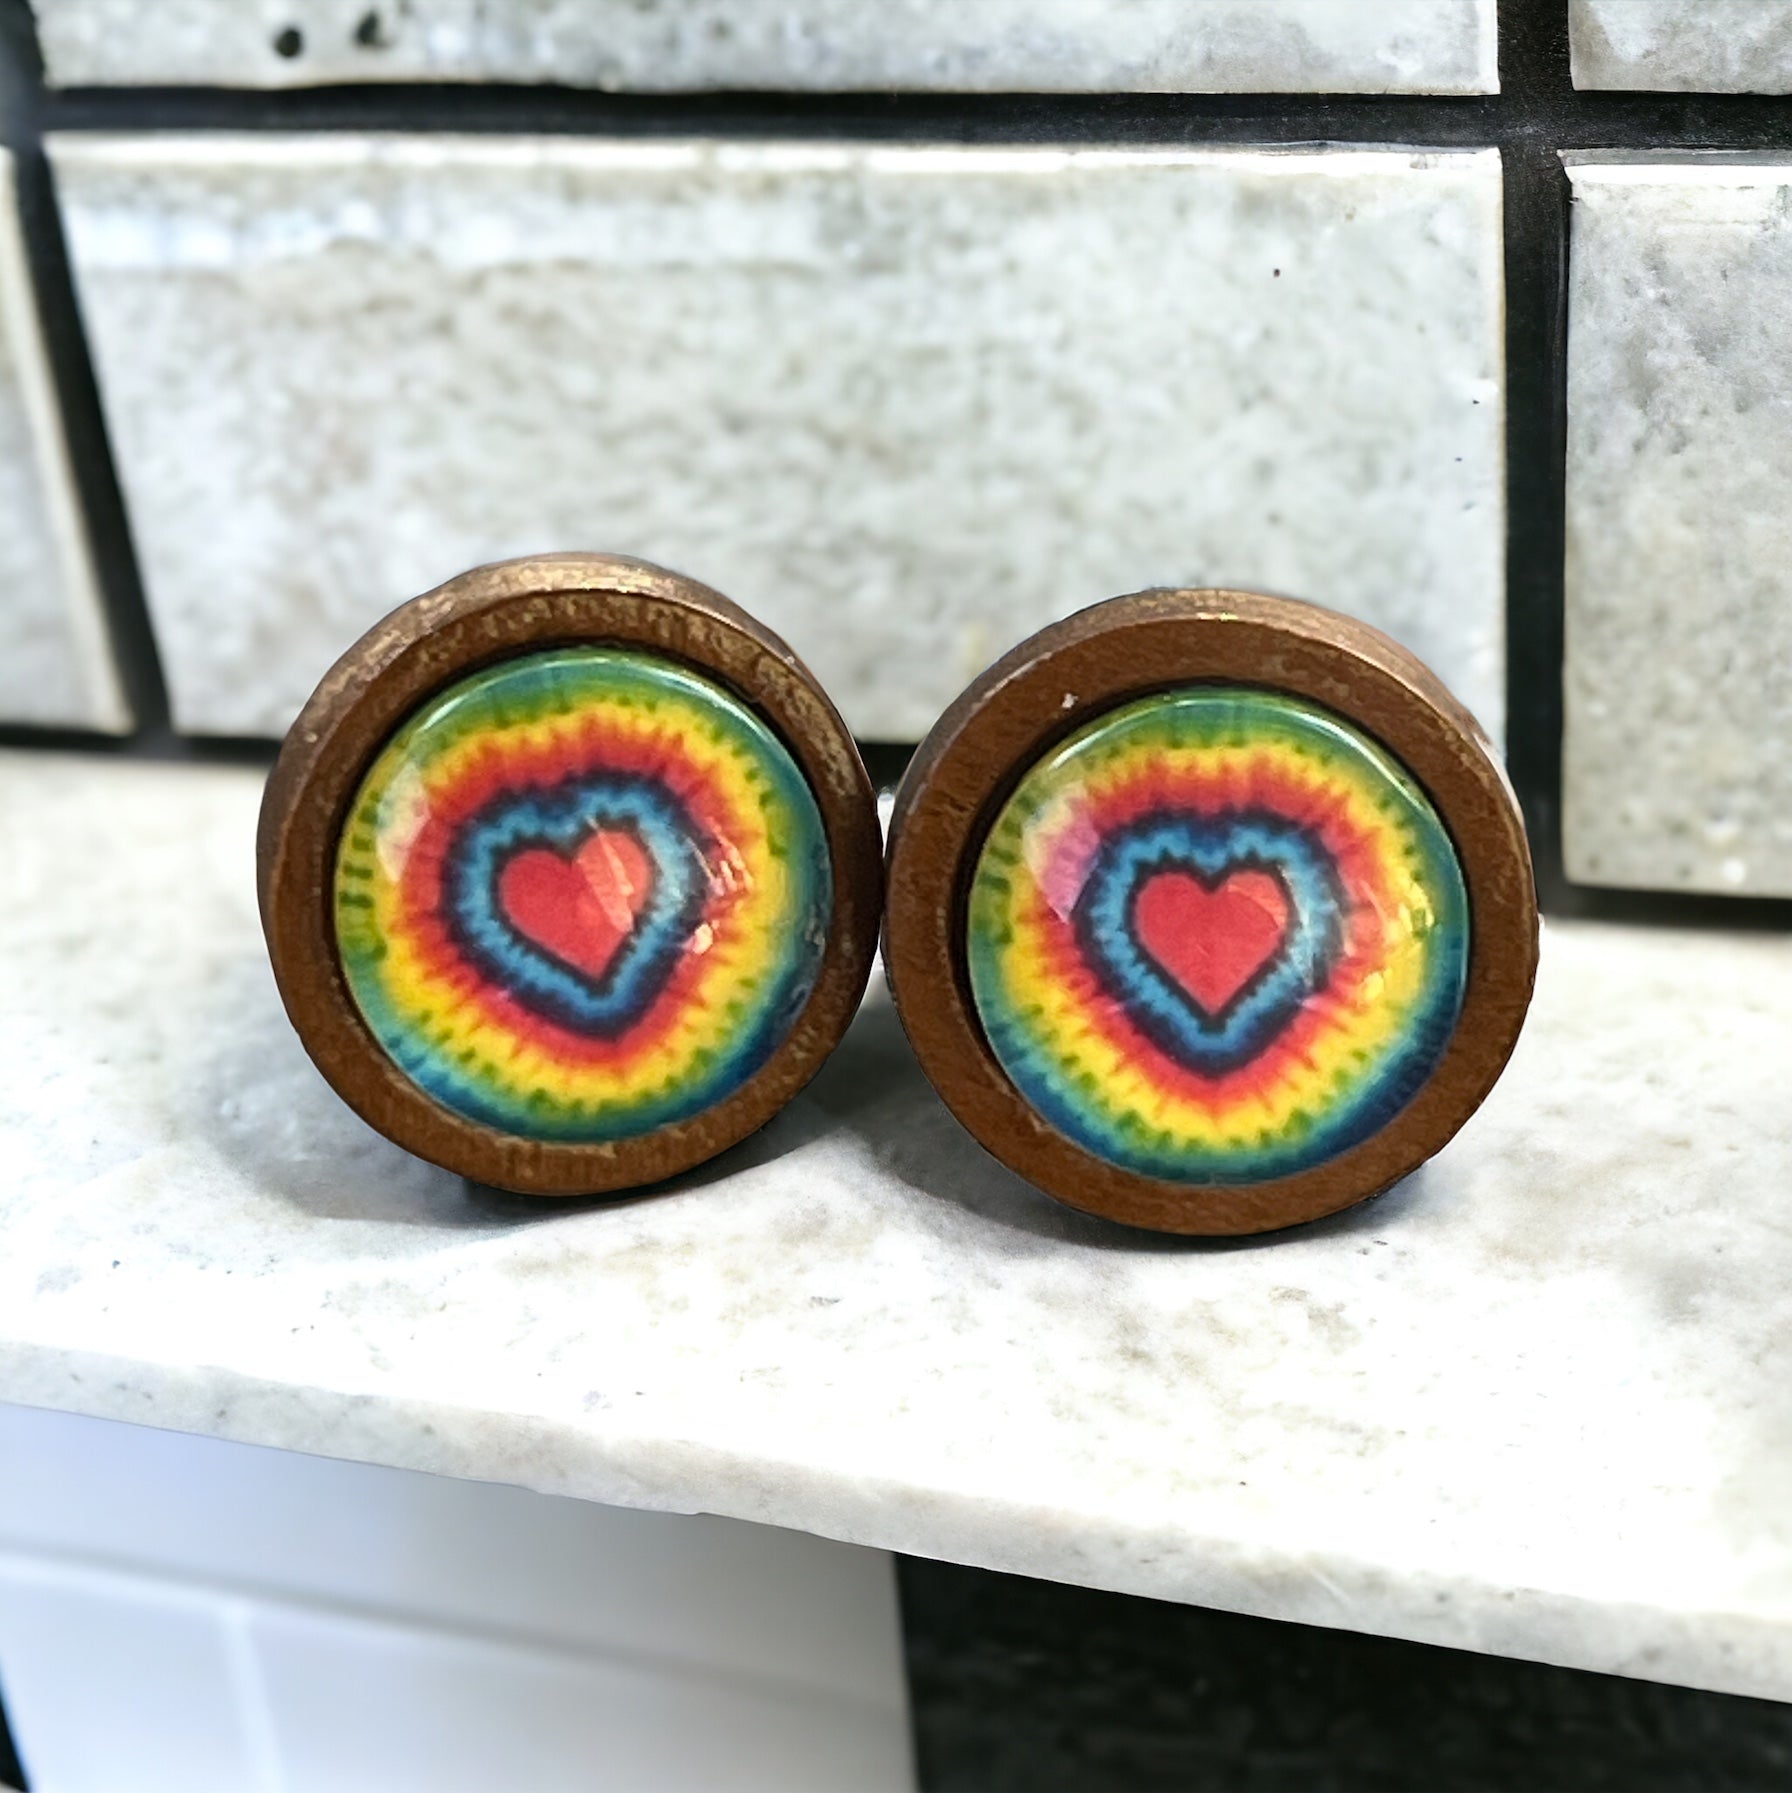 Tie-Dye Heart Wood Stud Earrings: Boho Hippie Chic for Vibrant Style